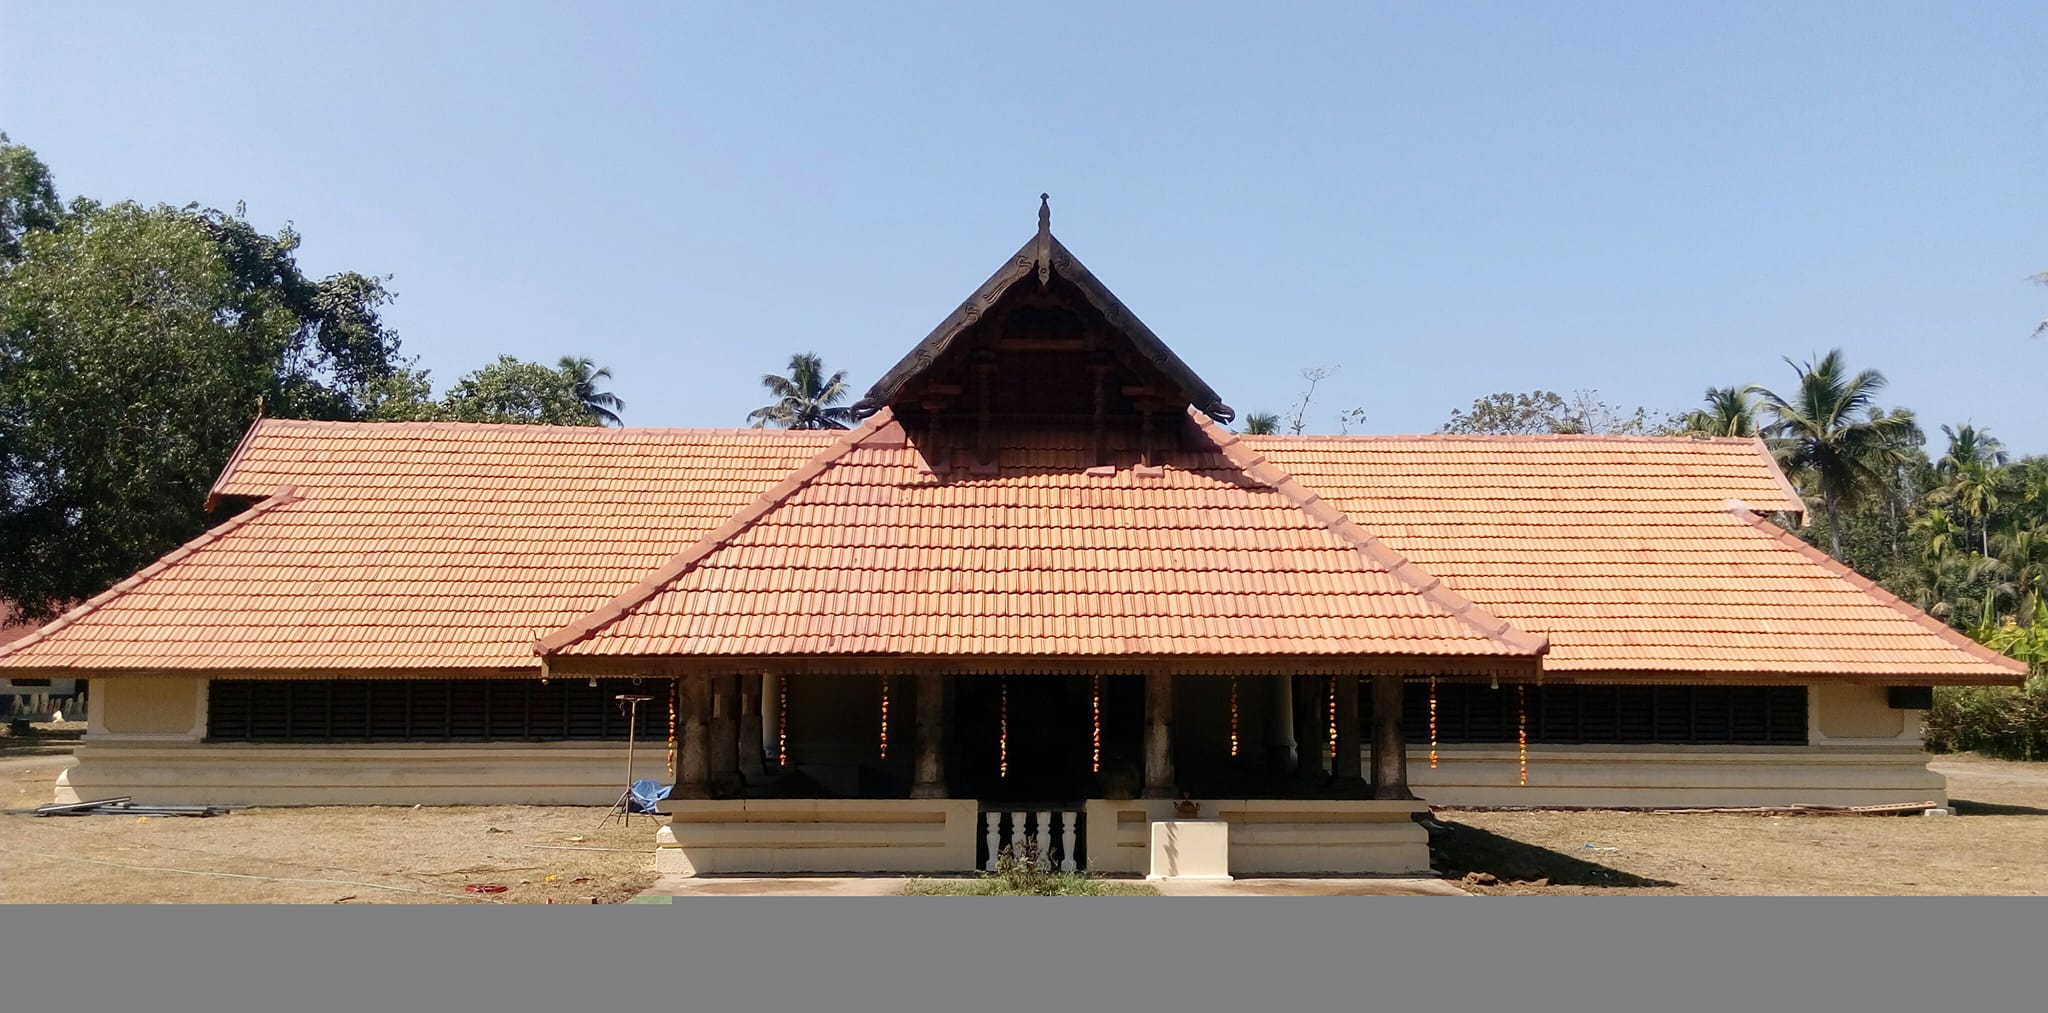 Thiru Nayathode Temple in Kerala